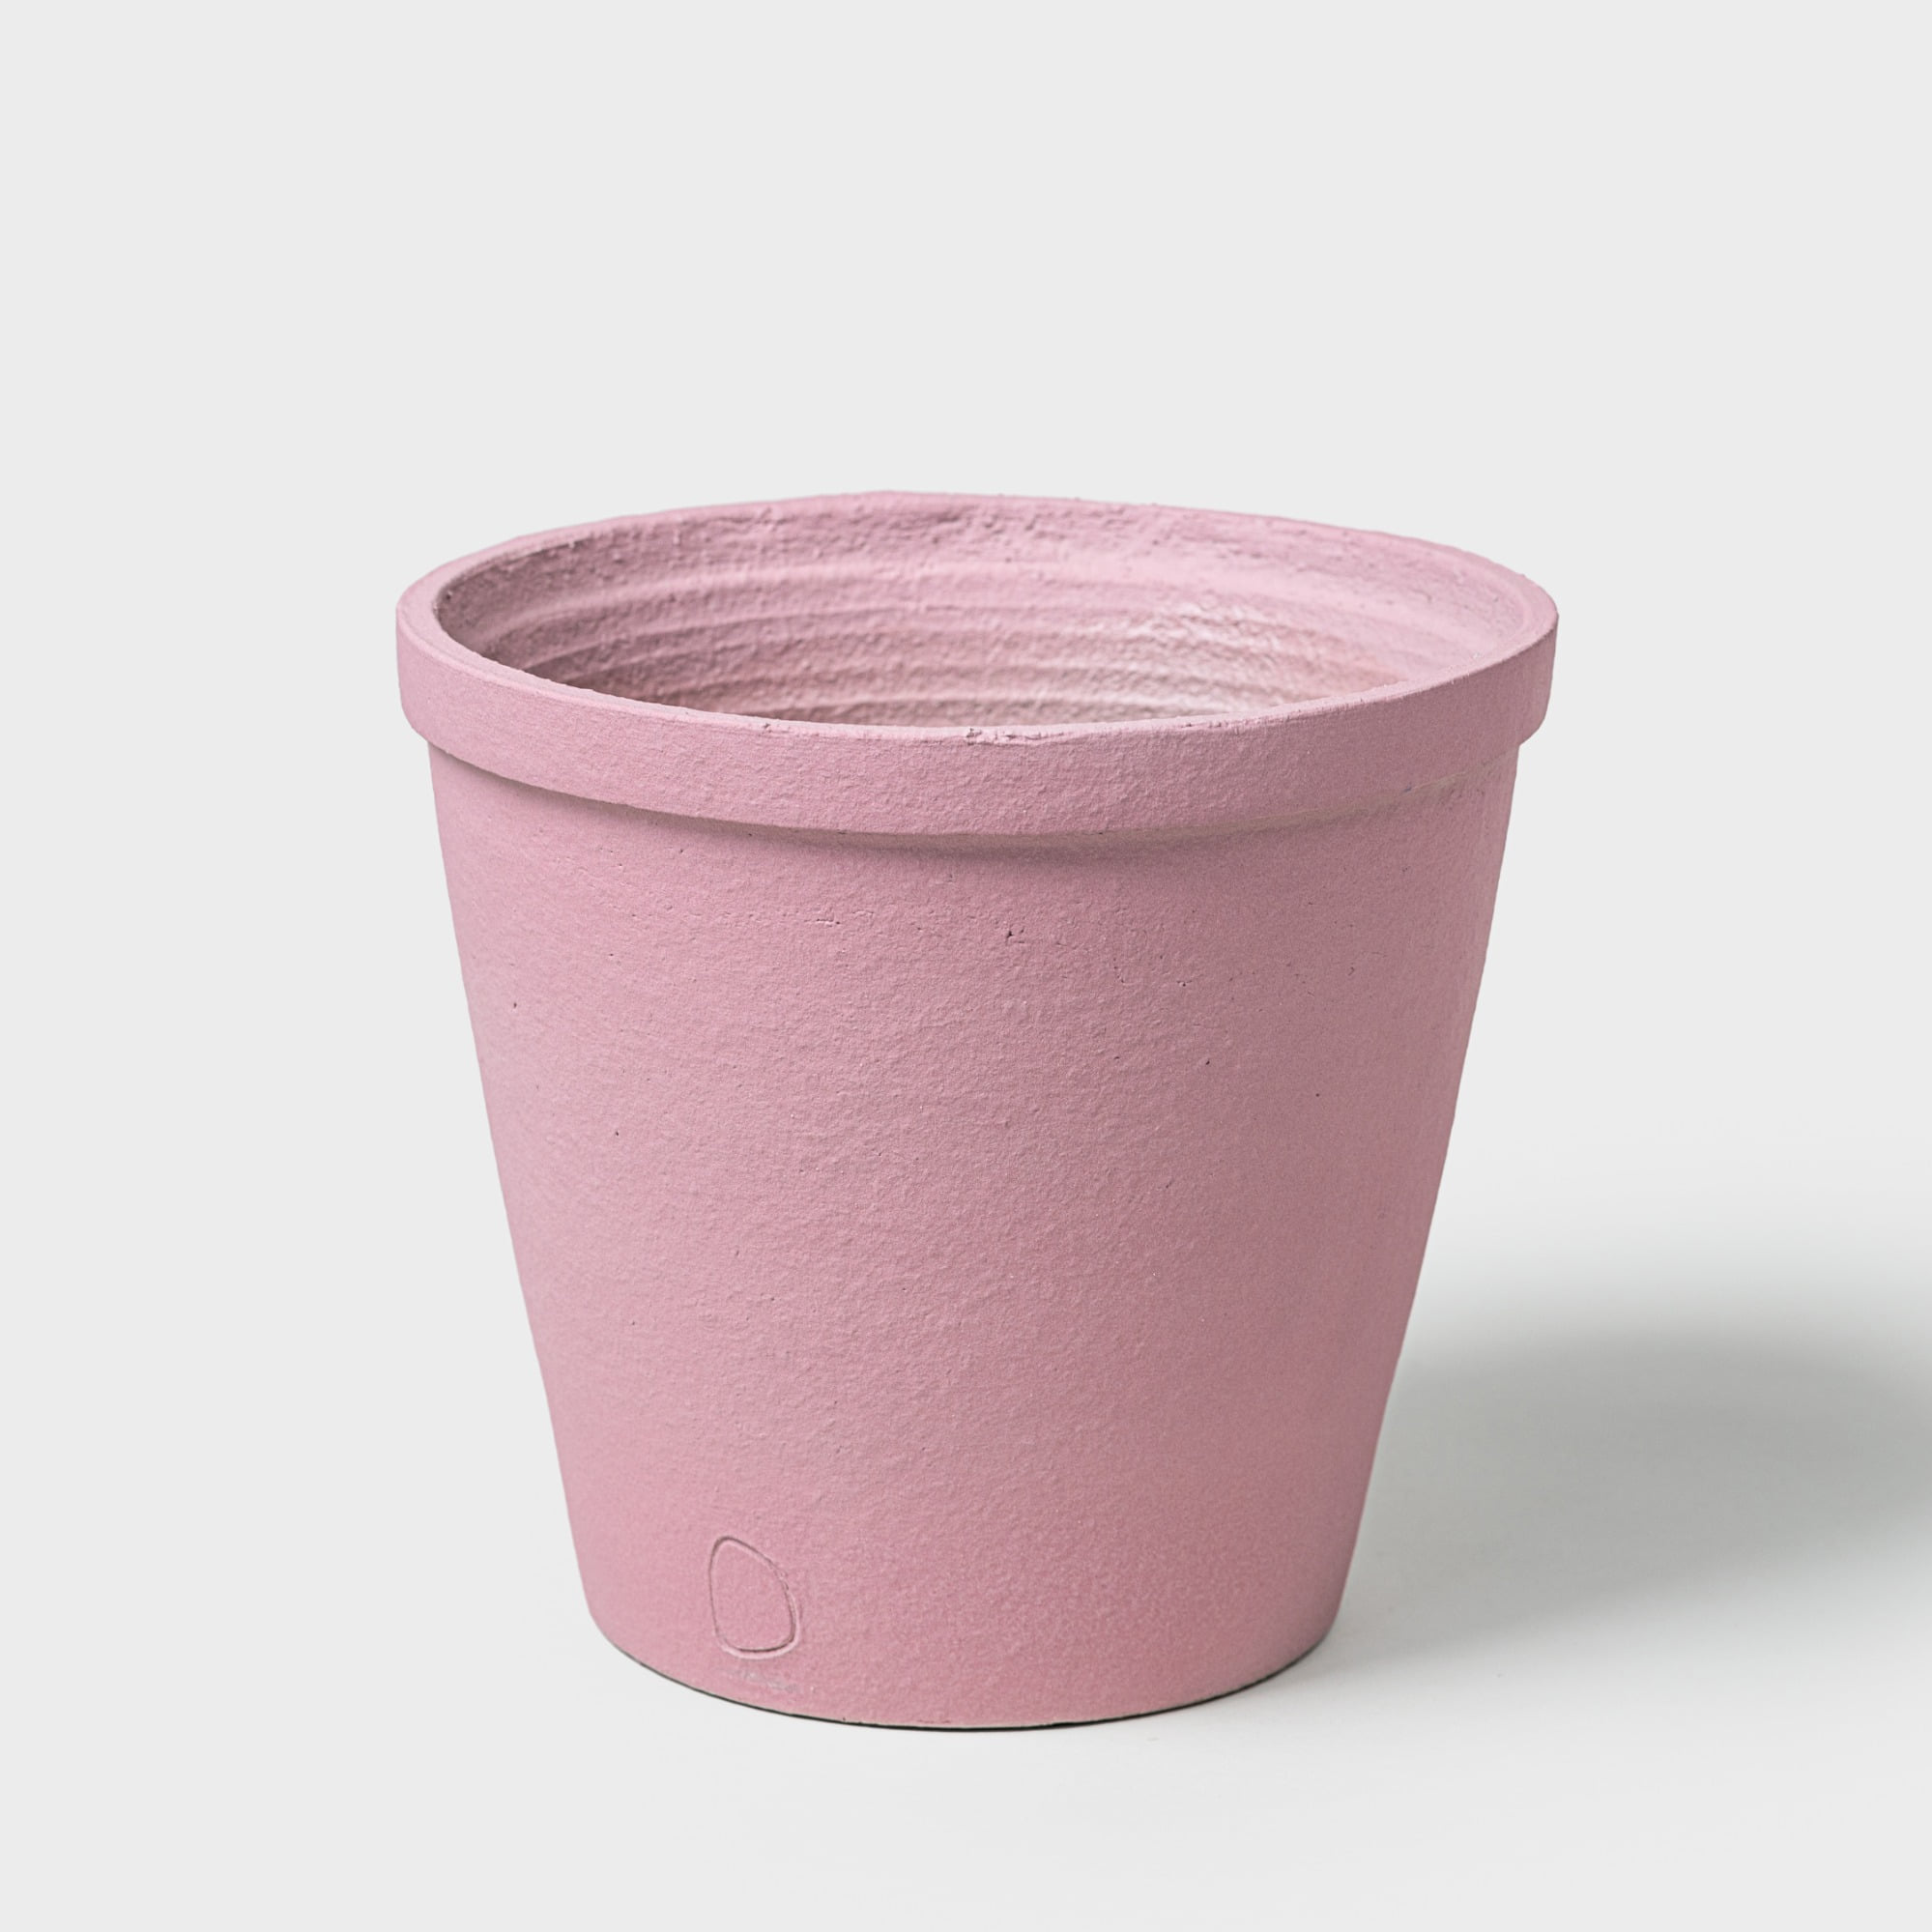 DOMANI Lekki Pot - Light Pink